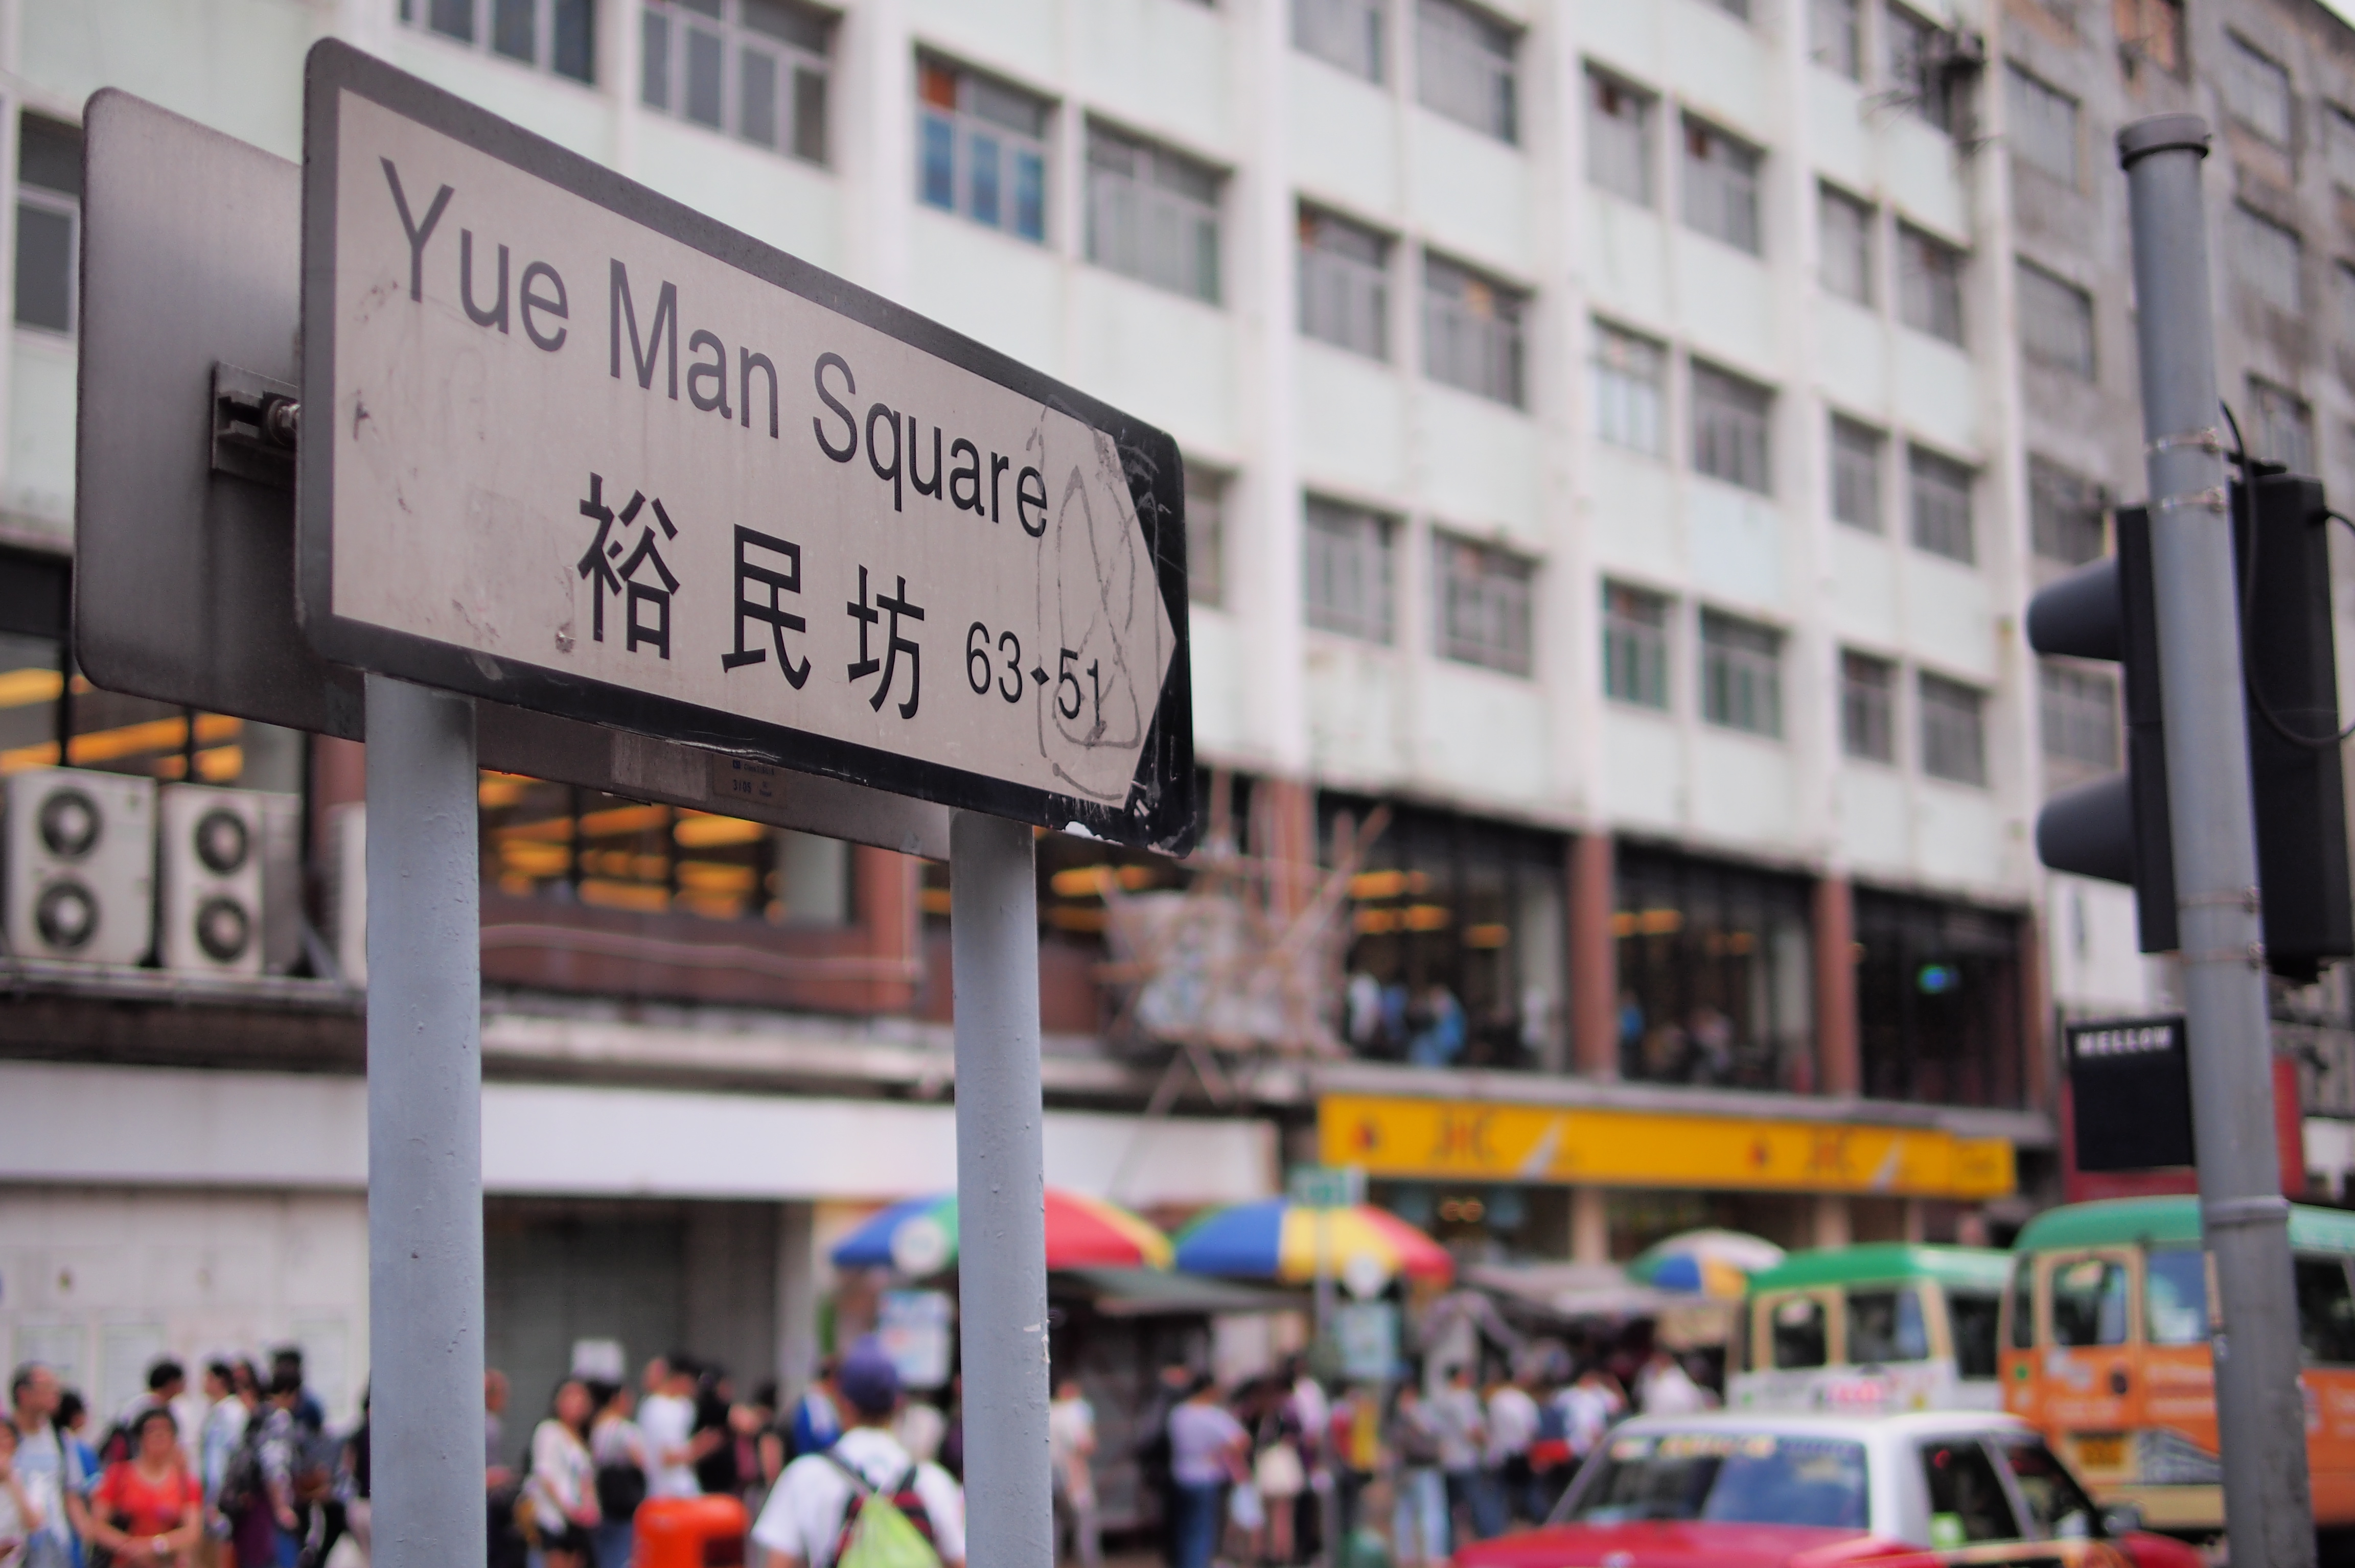 Yue Man Square